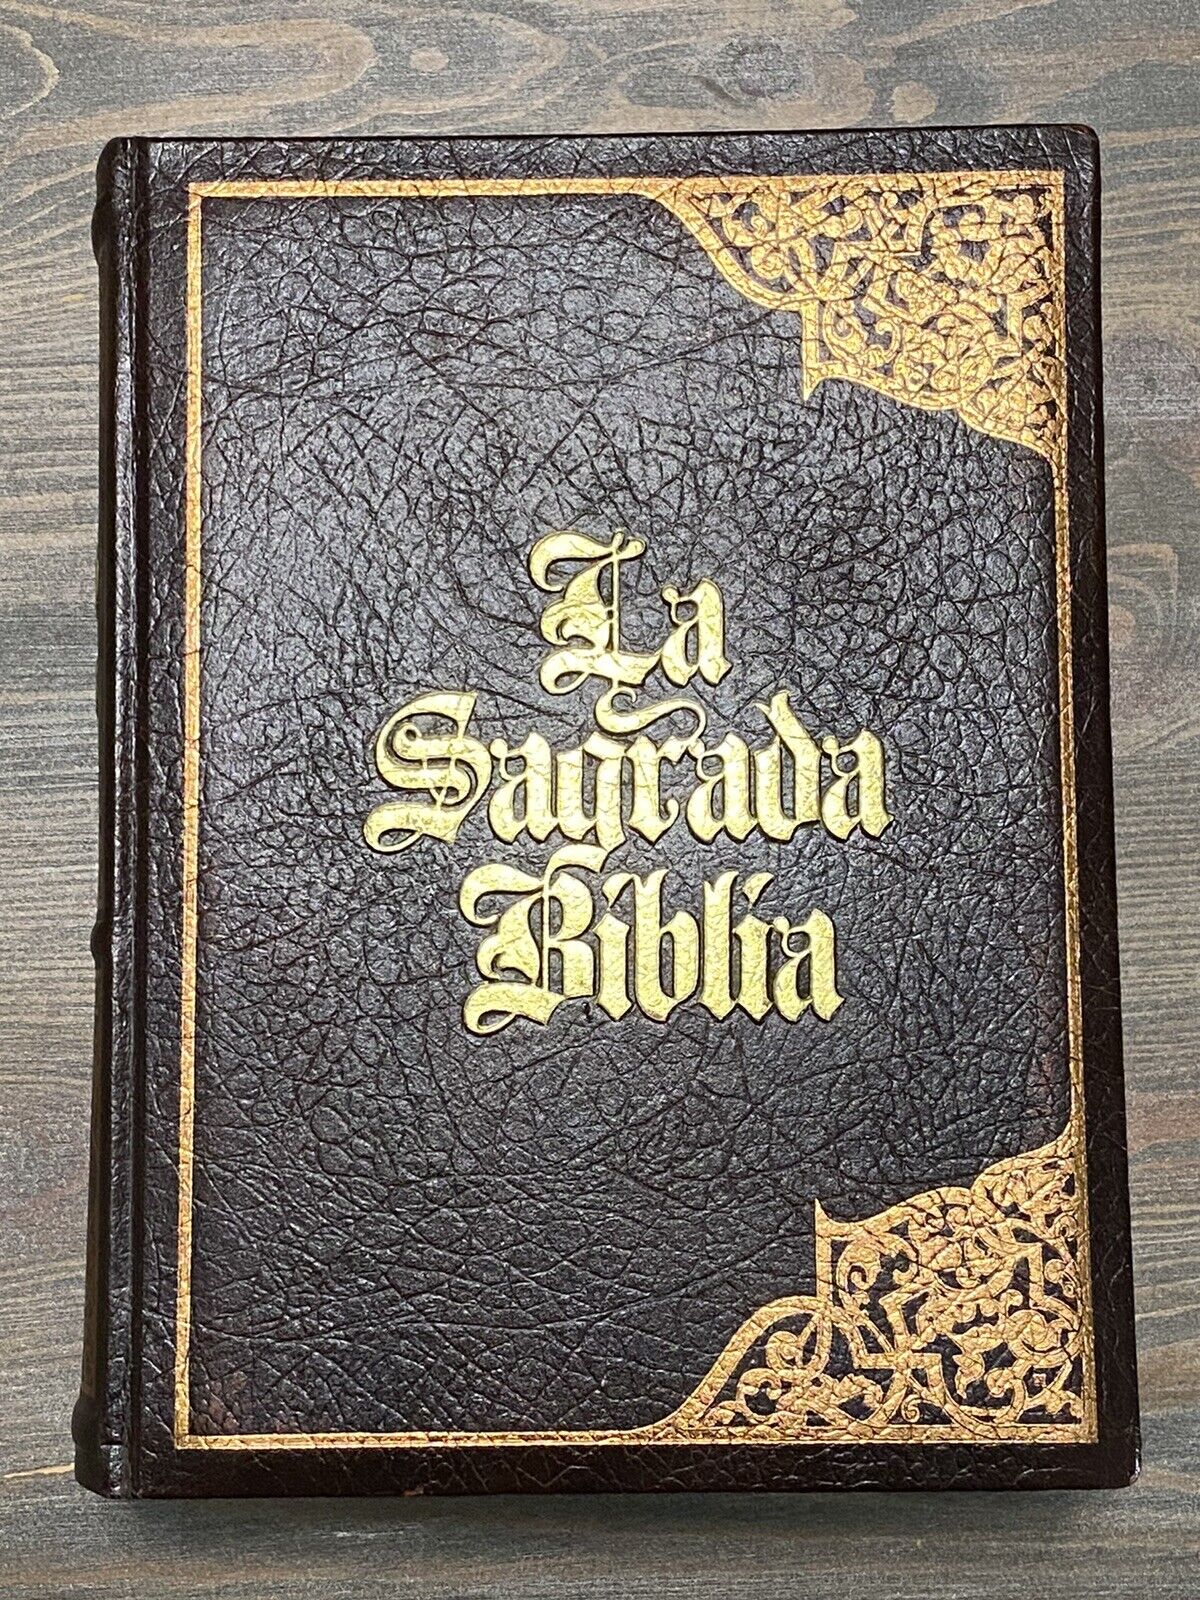 Sagrada Biblia 1993 Traducida Por El P. José Miguel Petisco.